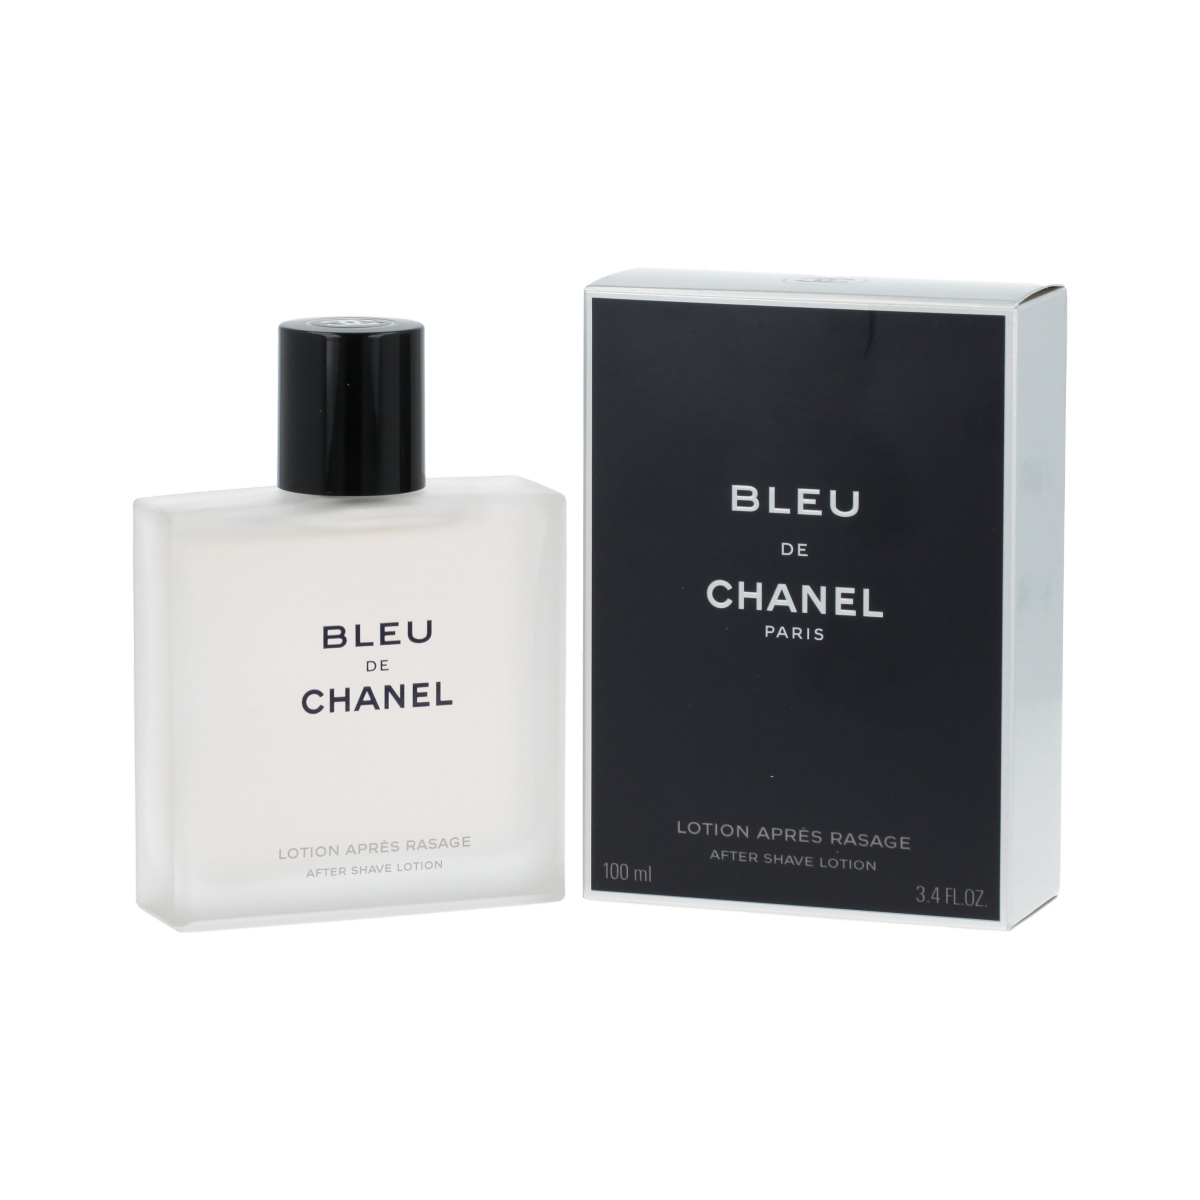 Chanel Bleu de Chanel 100ml balzamas po skutimosi